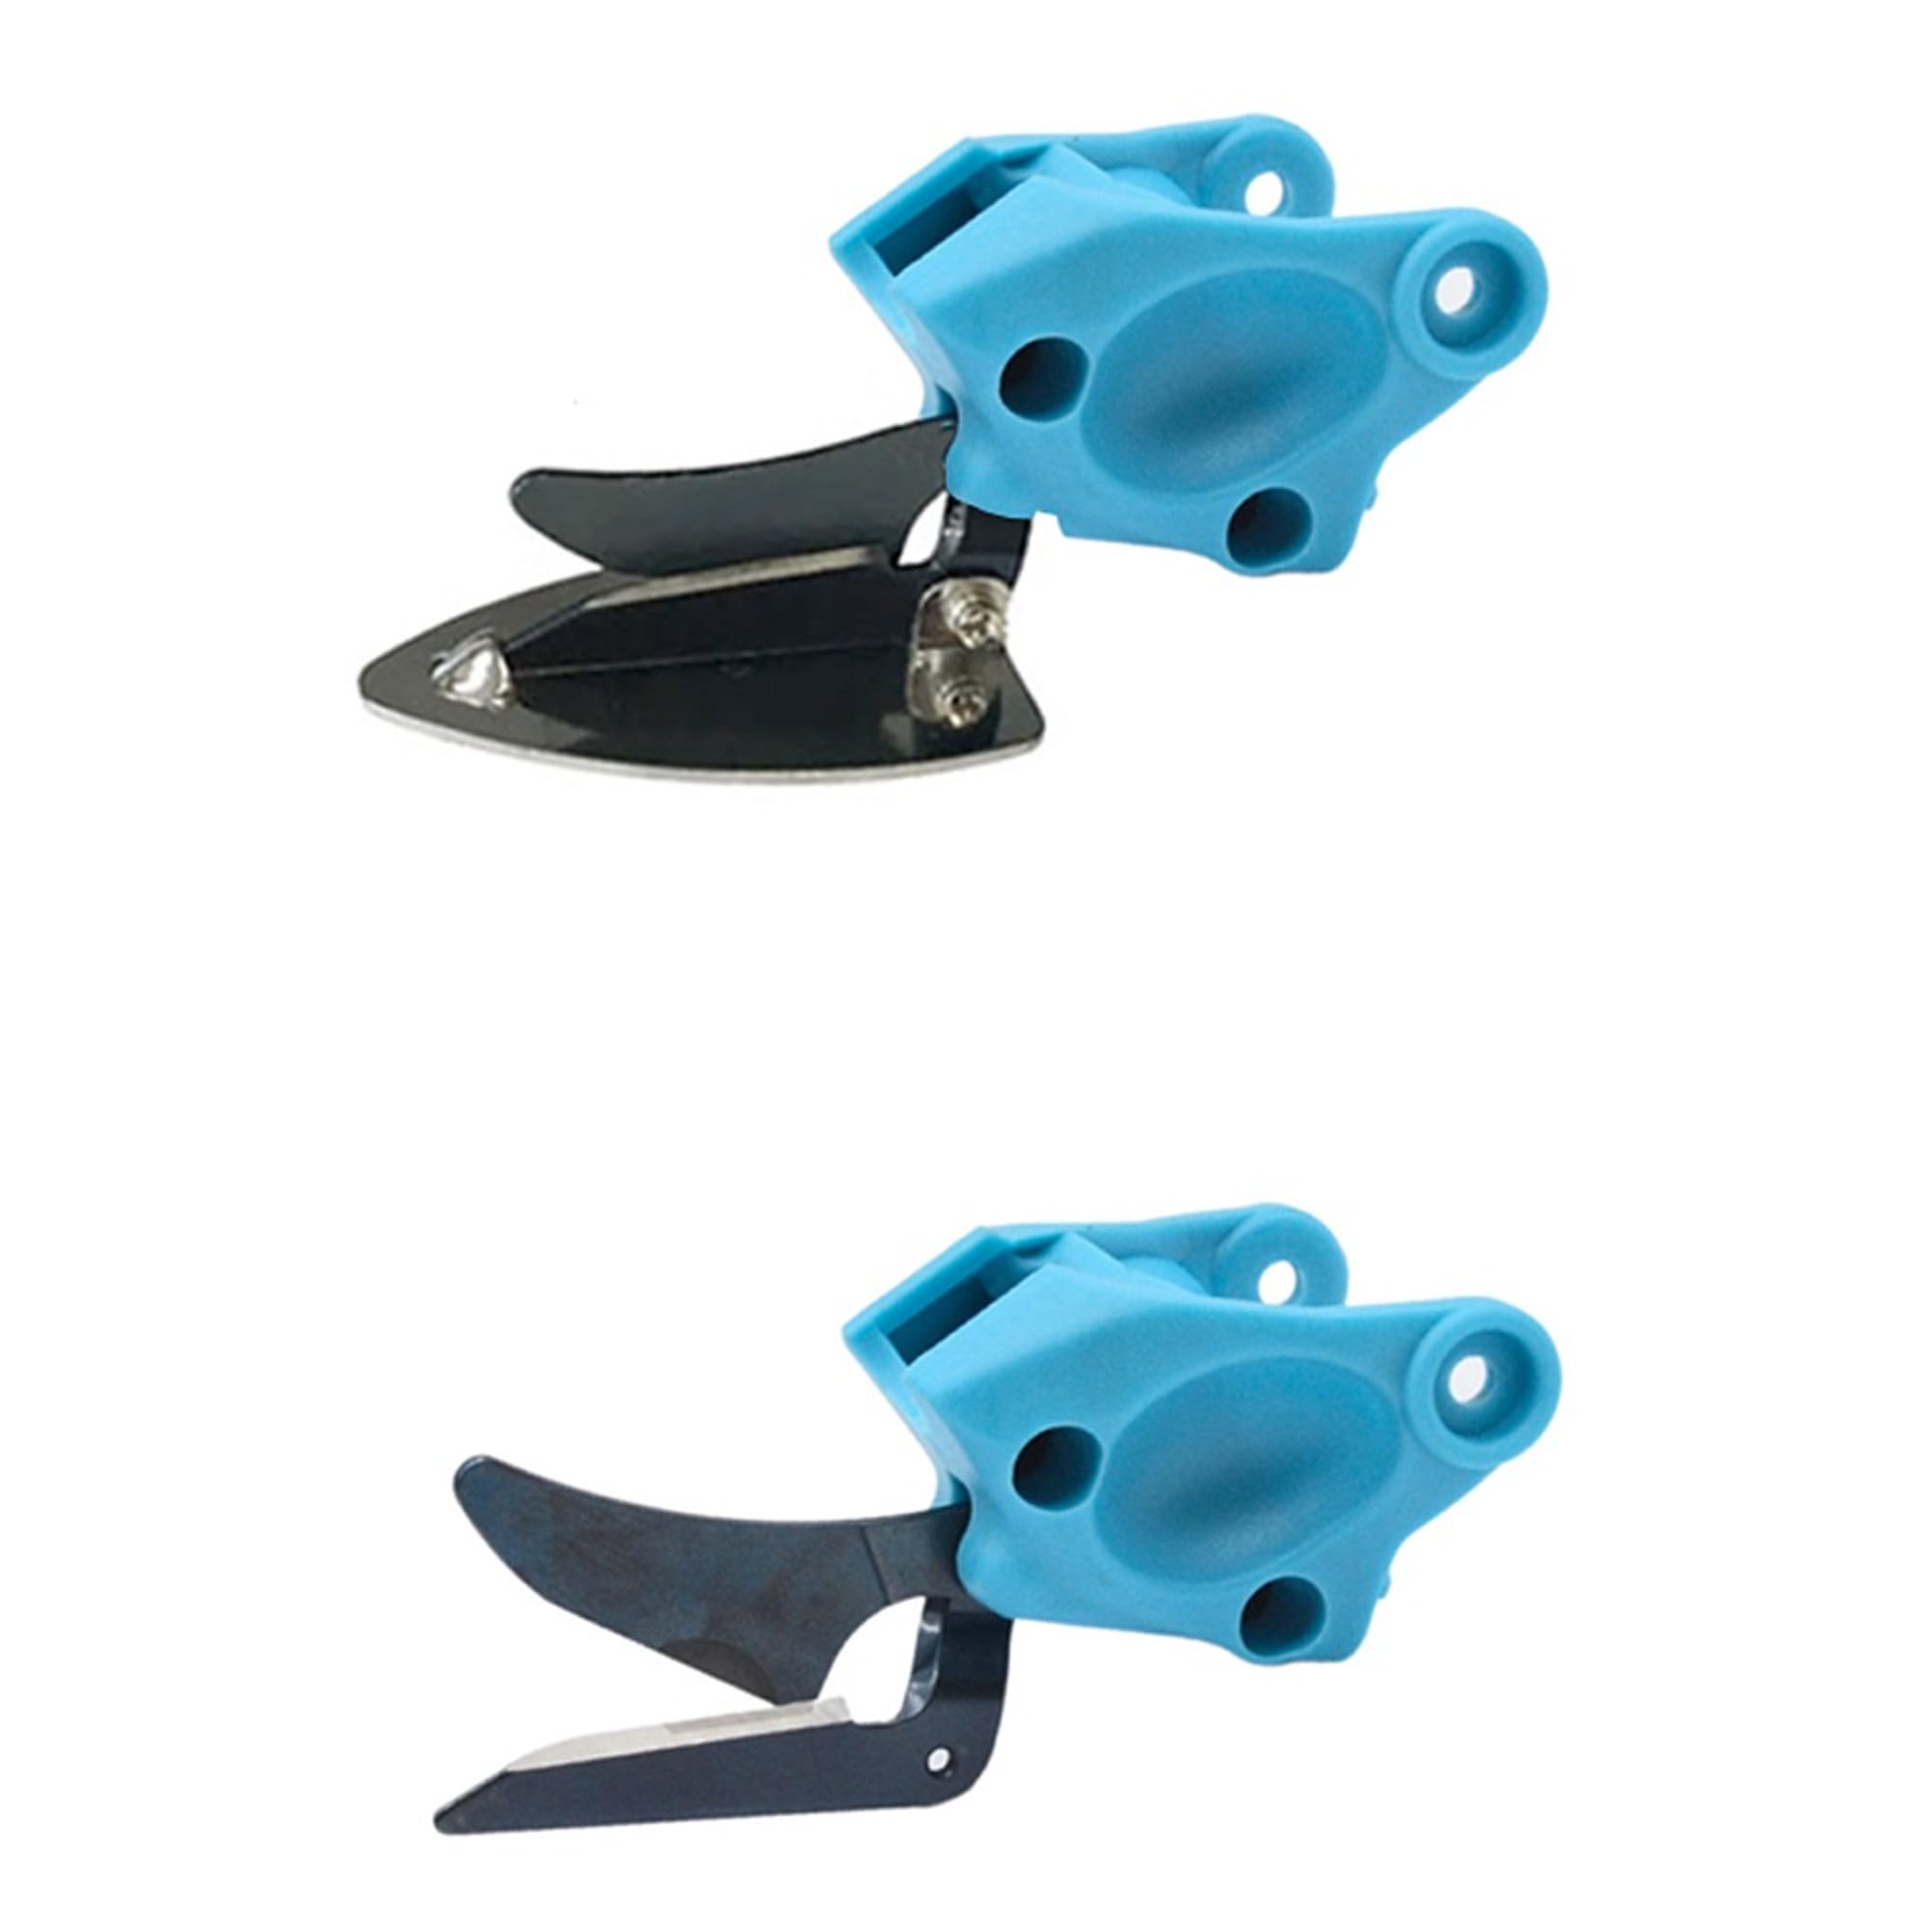 Cutter heads (serrated) for BLUE SHARK Cutter, image 2